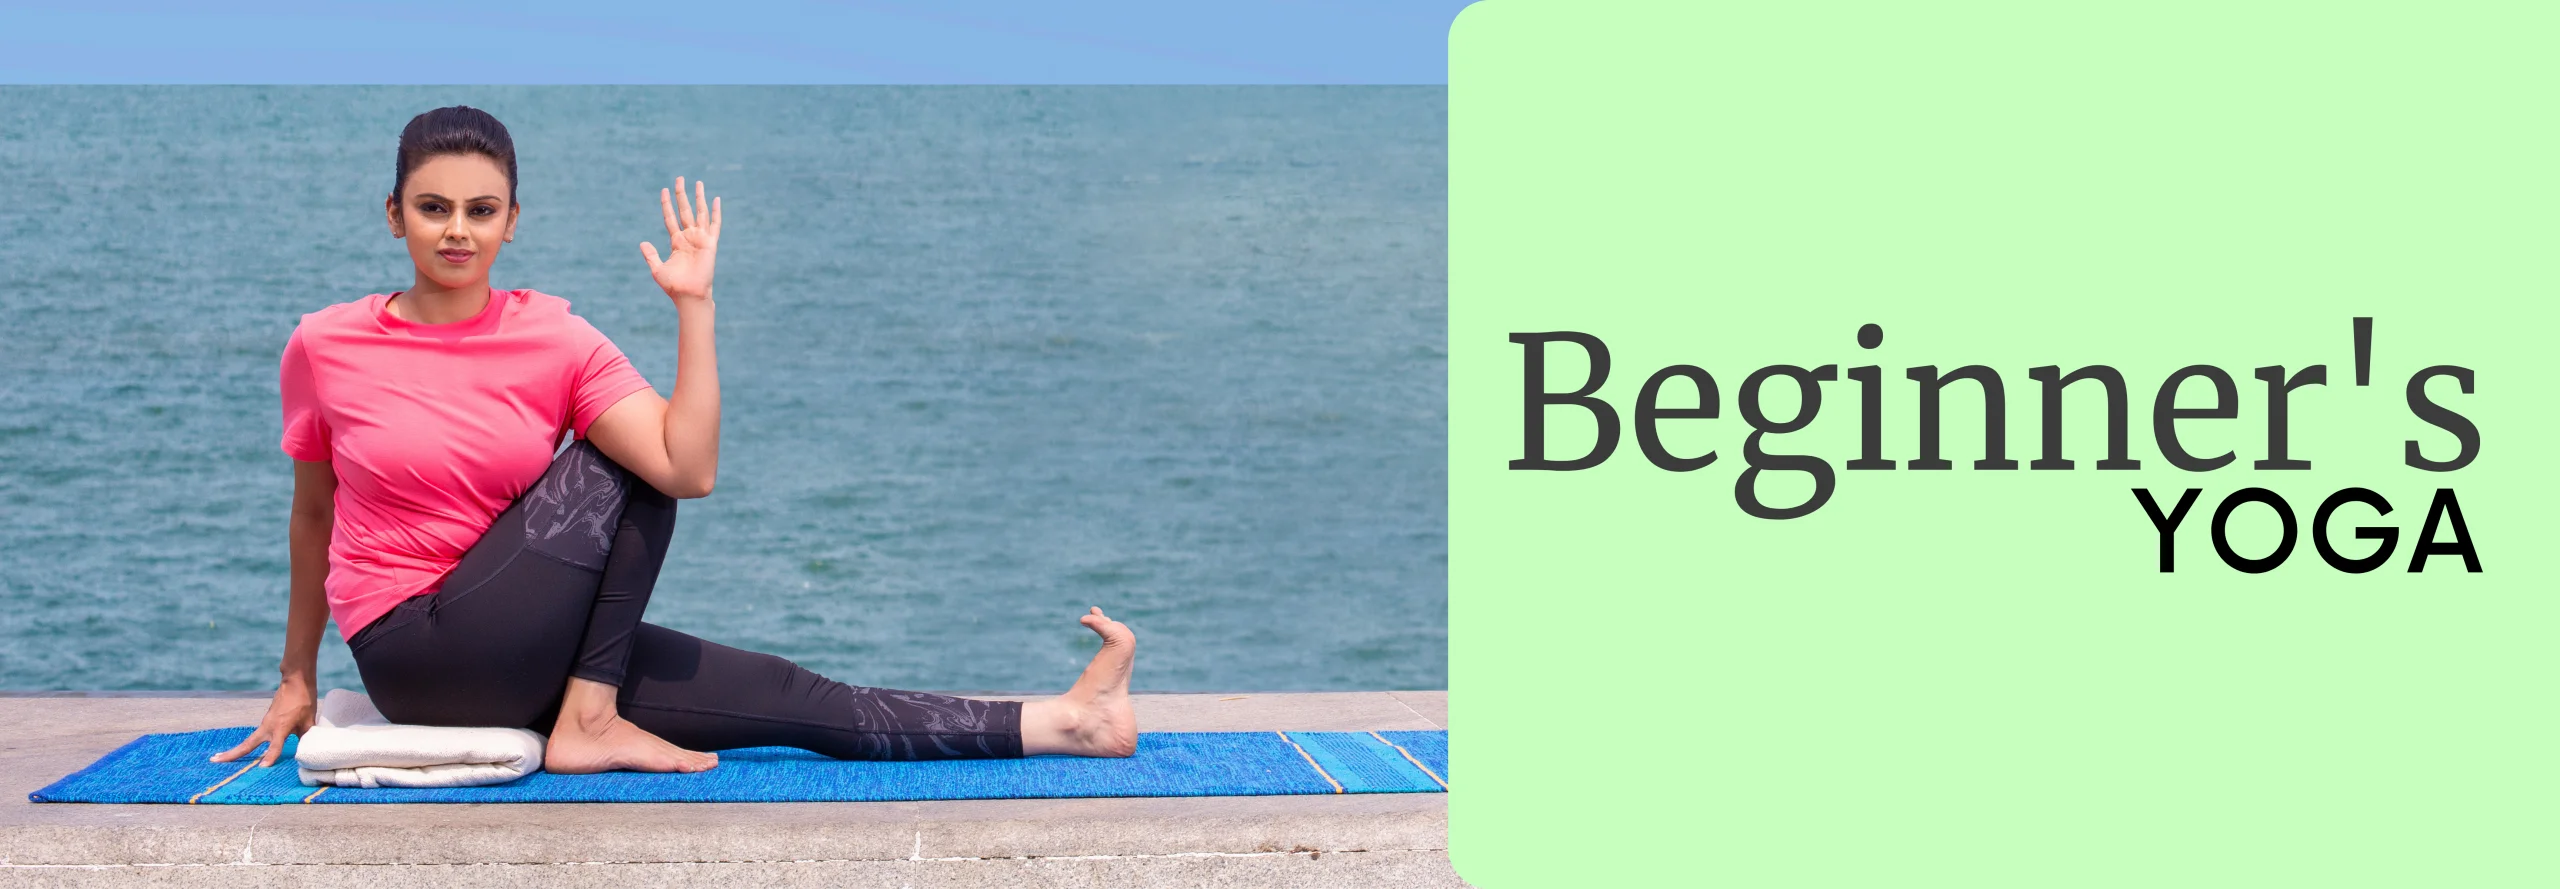 Beginner's Yoga Banner | Yoga.in